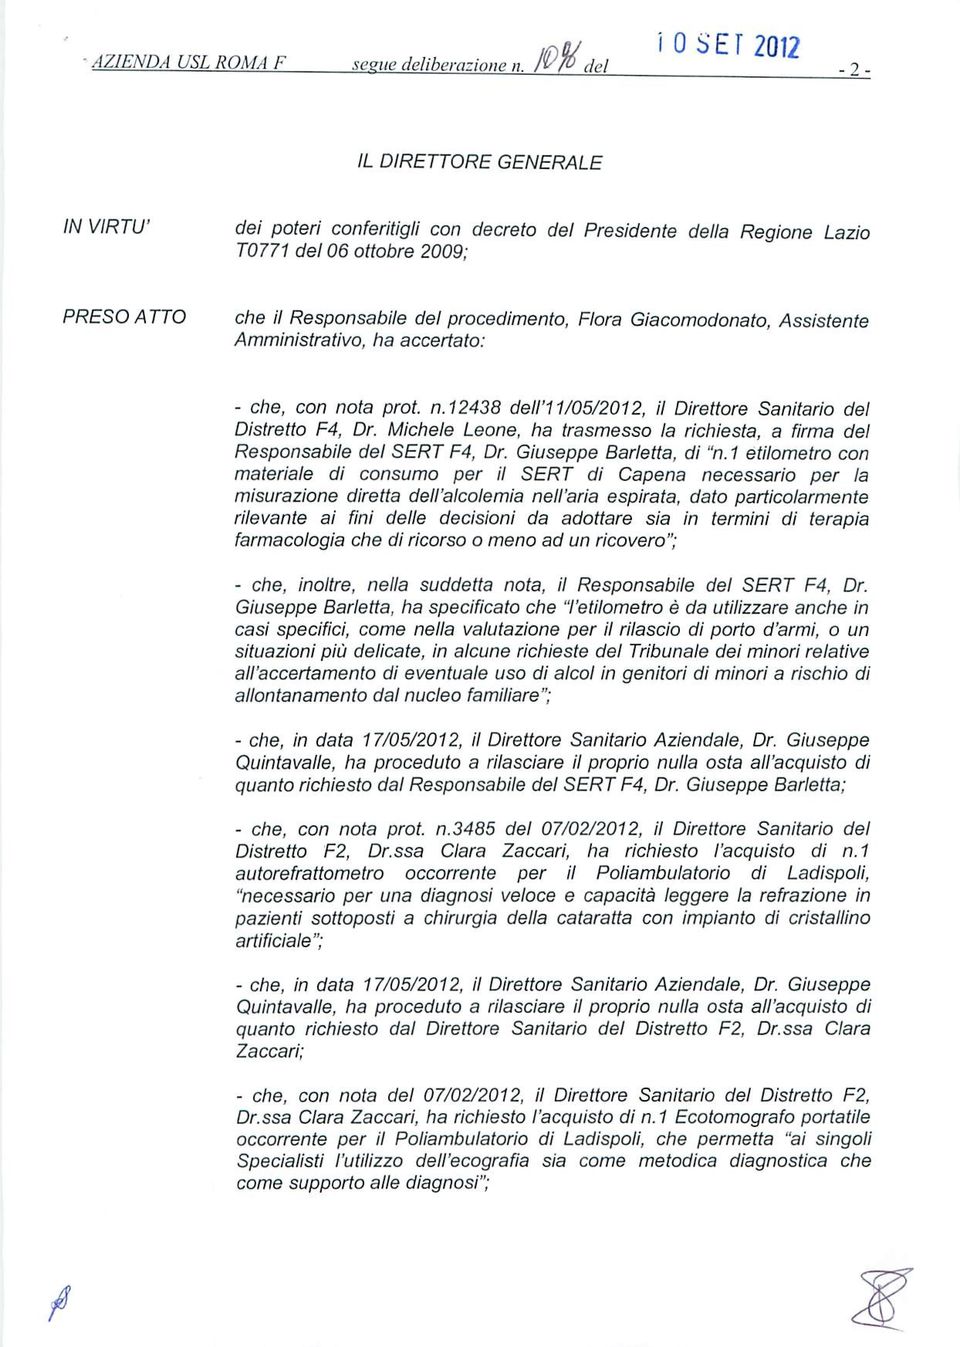 Michele Leone, ha trasmesso la richiesta, a firma del Responsabile del SERT F4, Dr. Giuseppe Barletta, di "n.